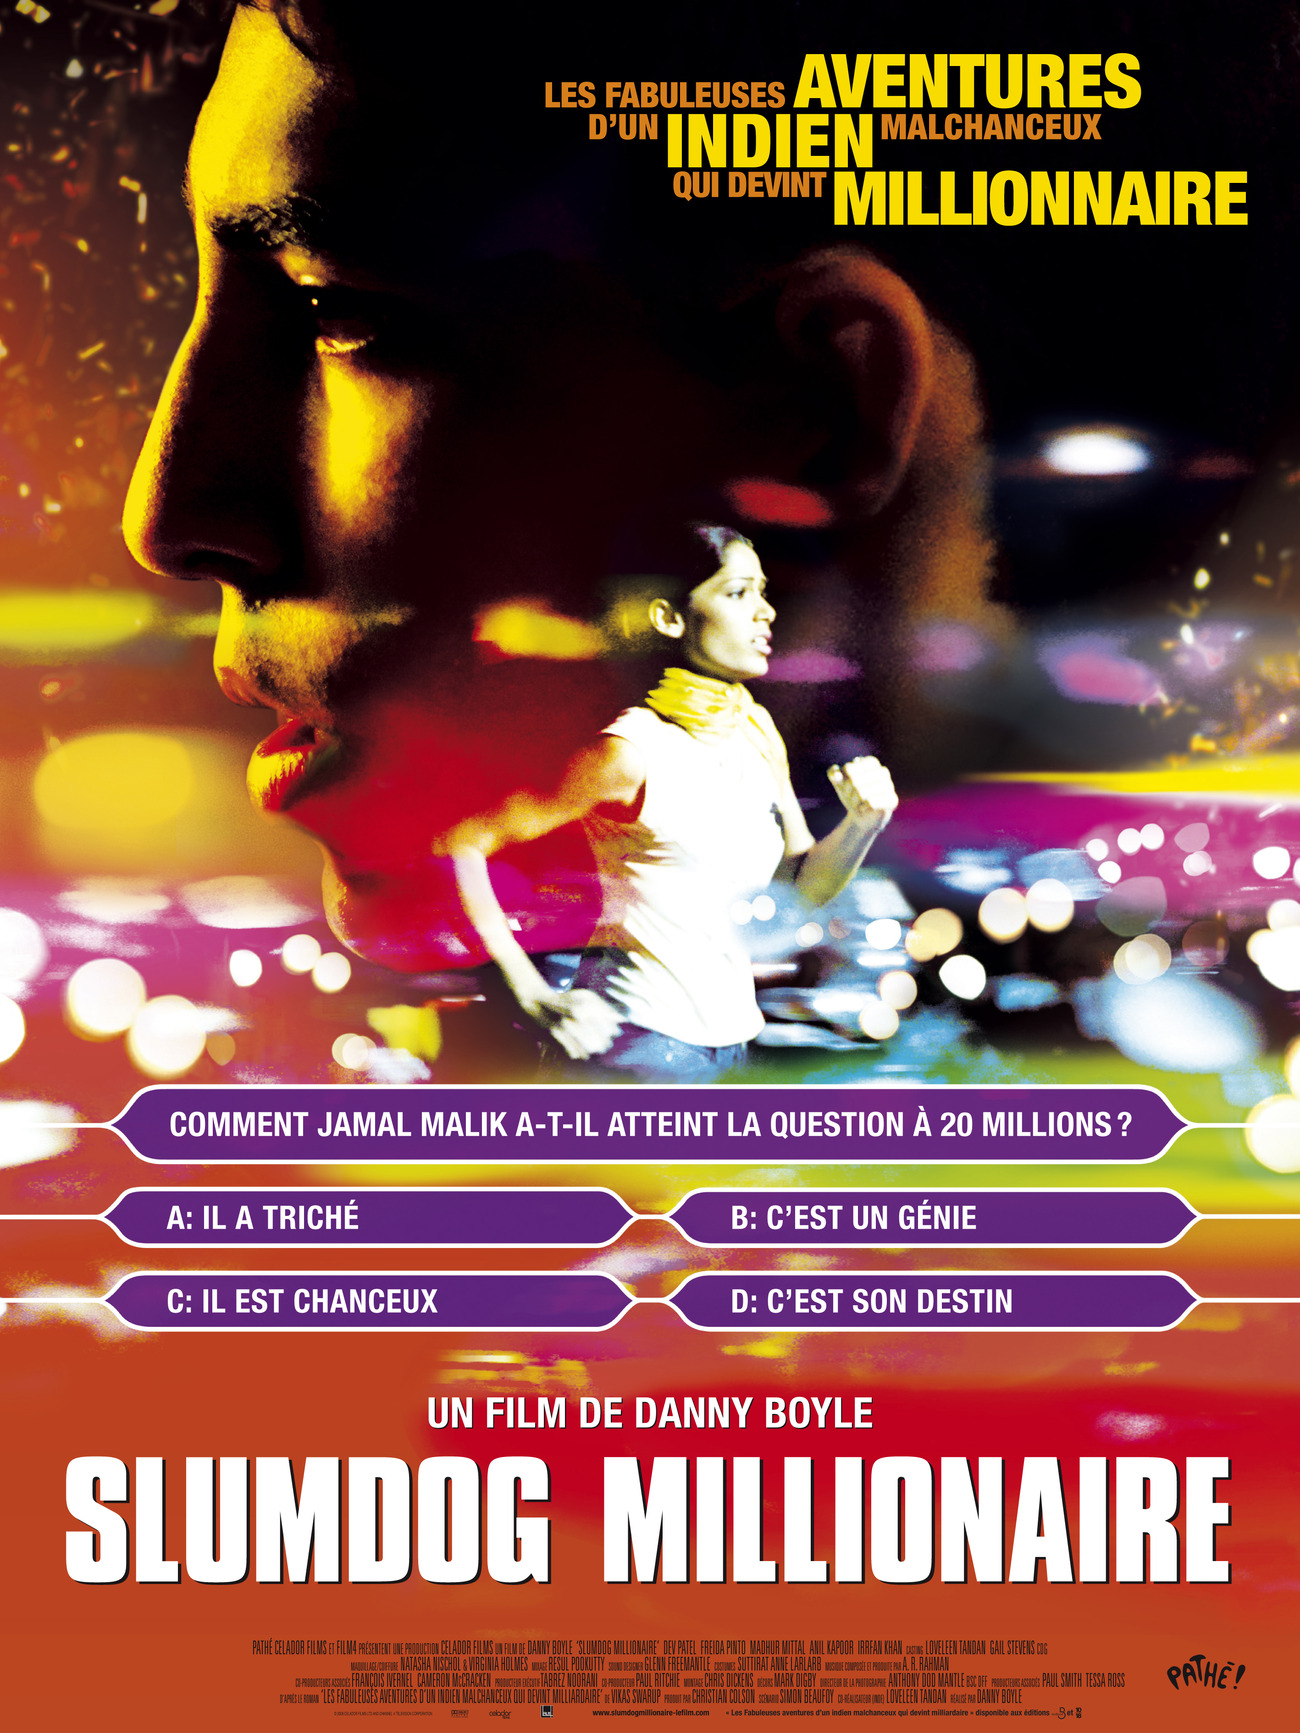 High Resolution Wallpaper | Slumdog Millionaire 1300x1733 px